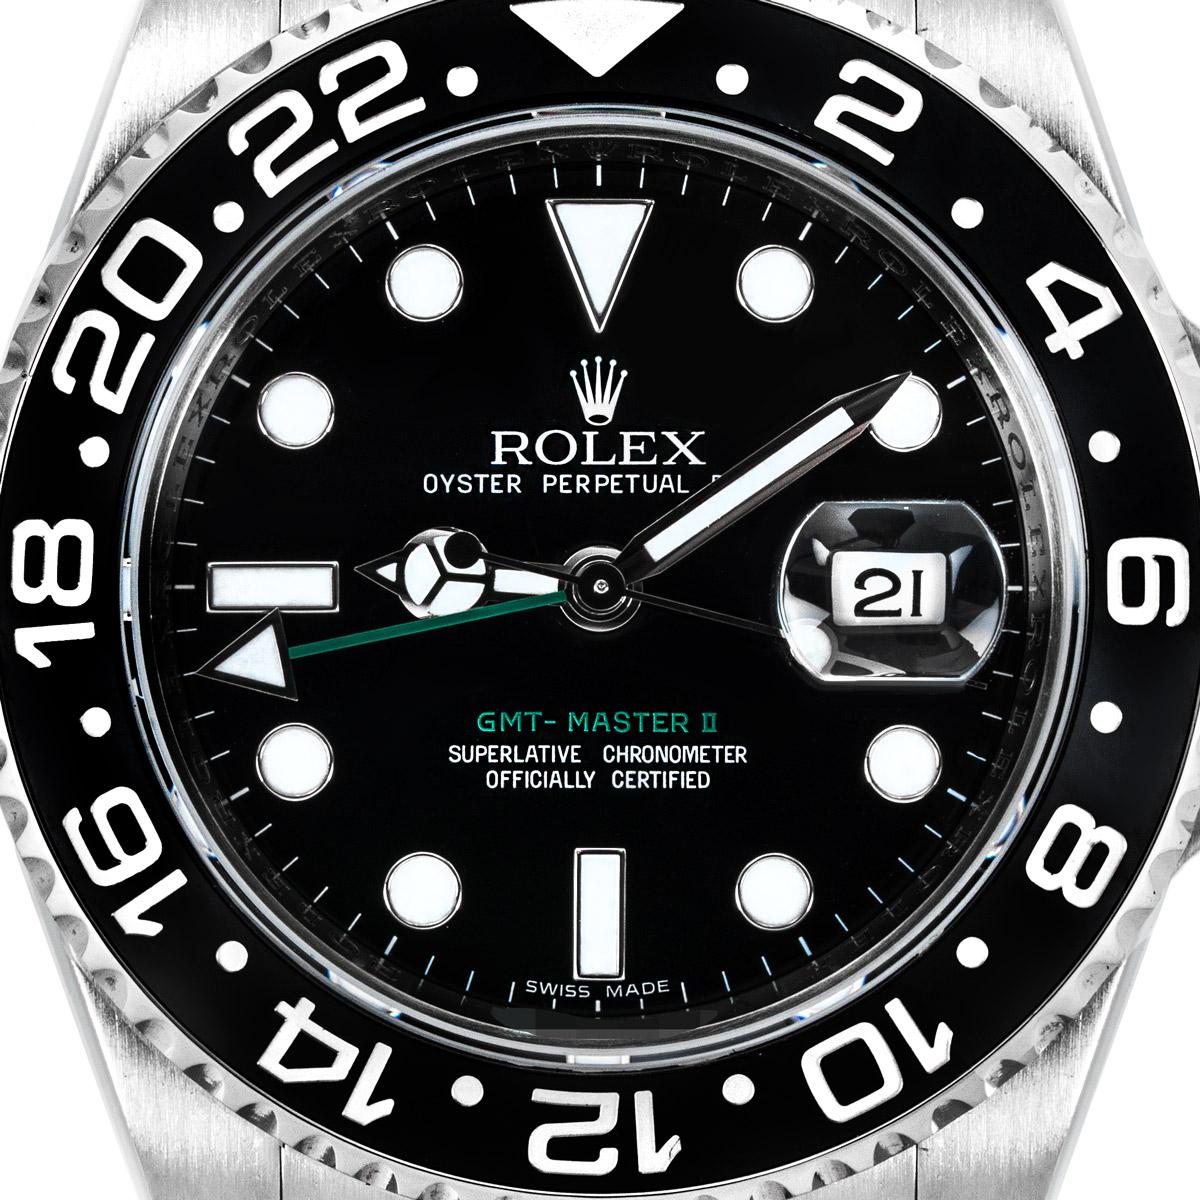 Une GMT-Master II en acier inoxydable de Rolex pour homme. Cadran noir avec date et aiguille verte pour le second fuseau horaire. La lunette rotative bidirectionnelle présente un affichage 24 heures sur l'insert en céramique.

Équipée d'un bracelet